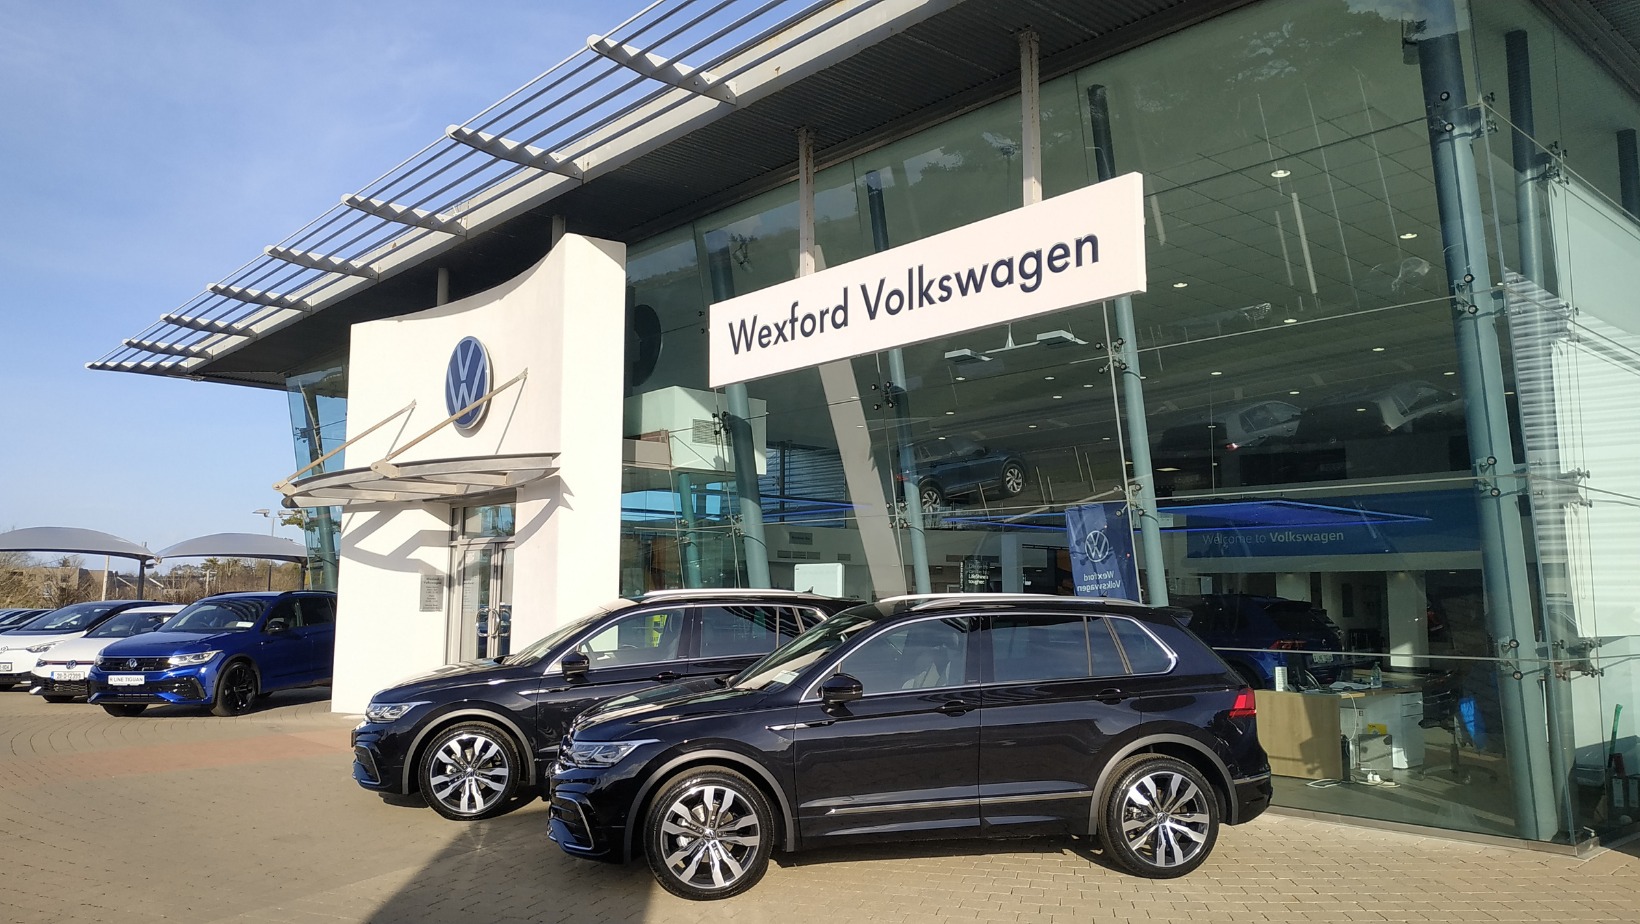 Wexford Volkswagen